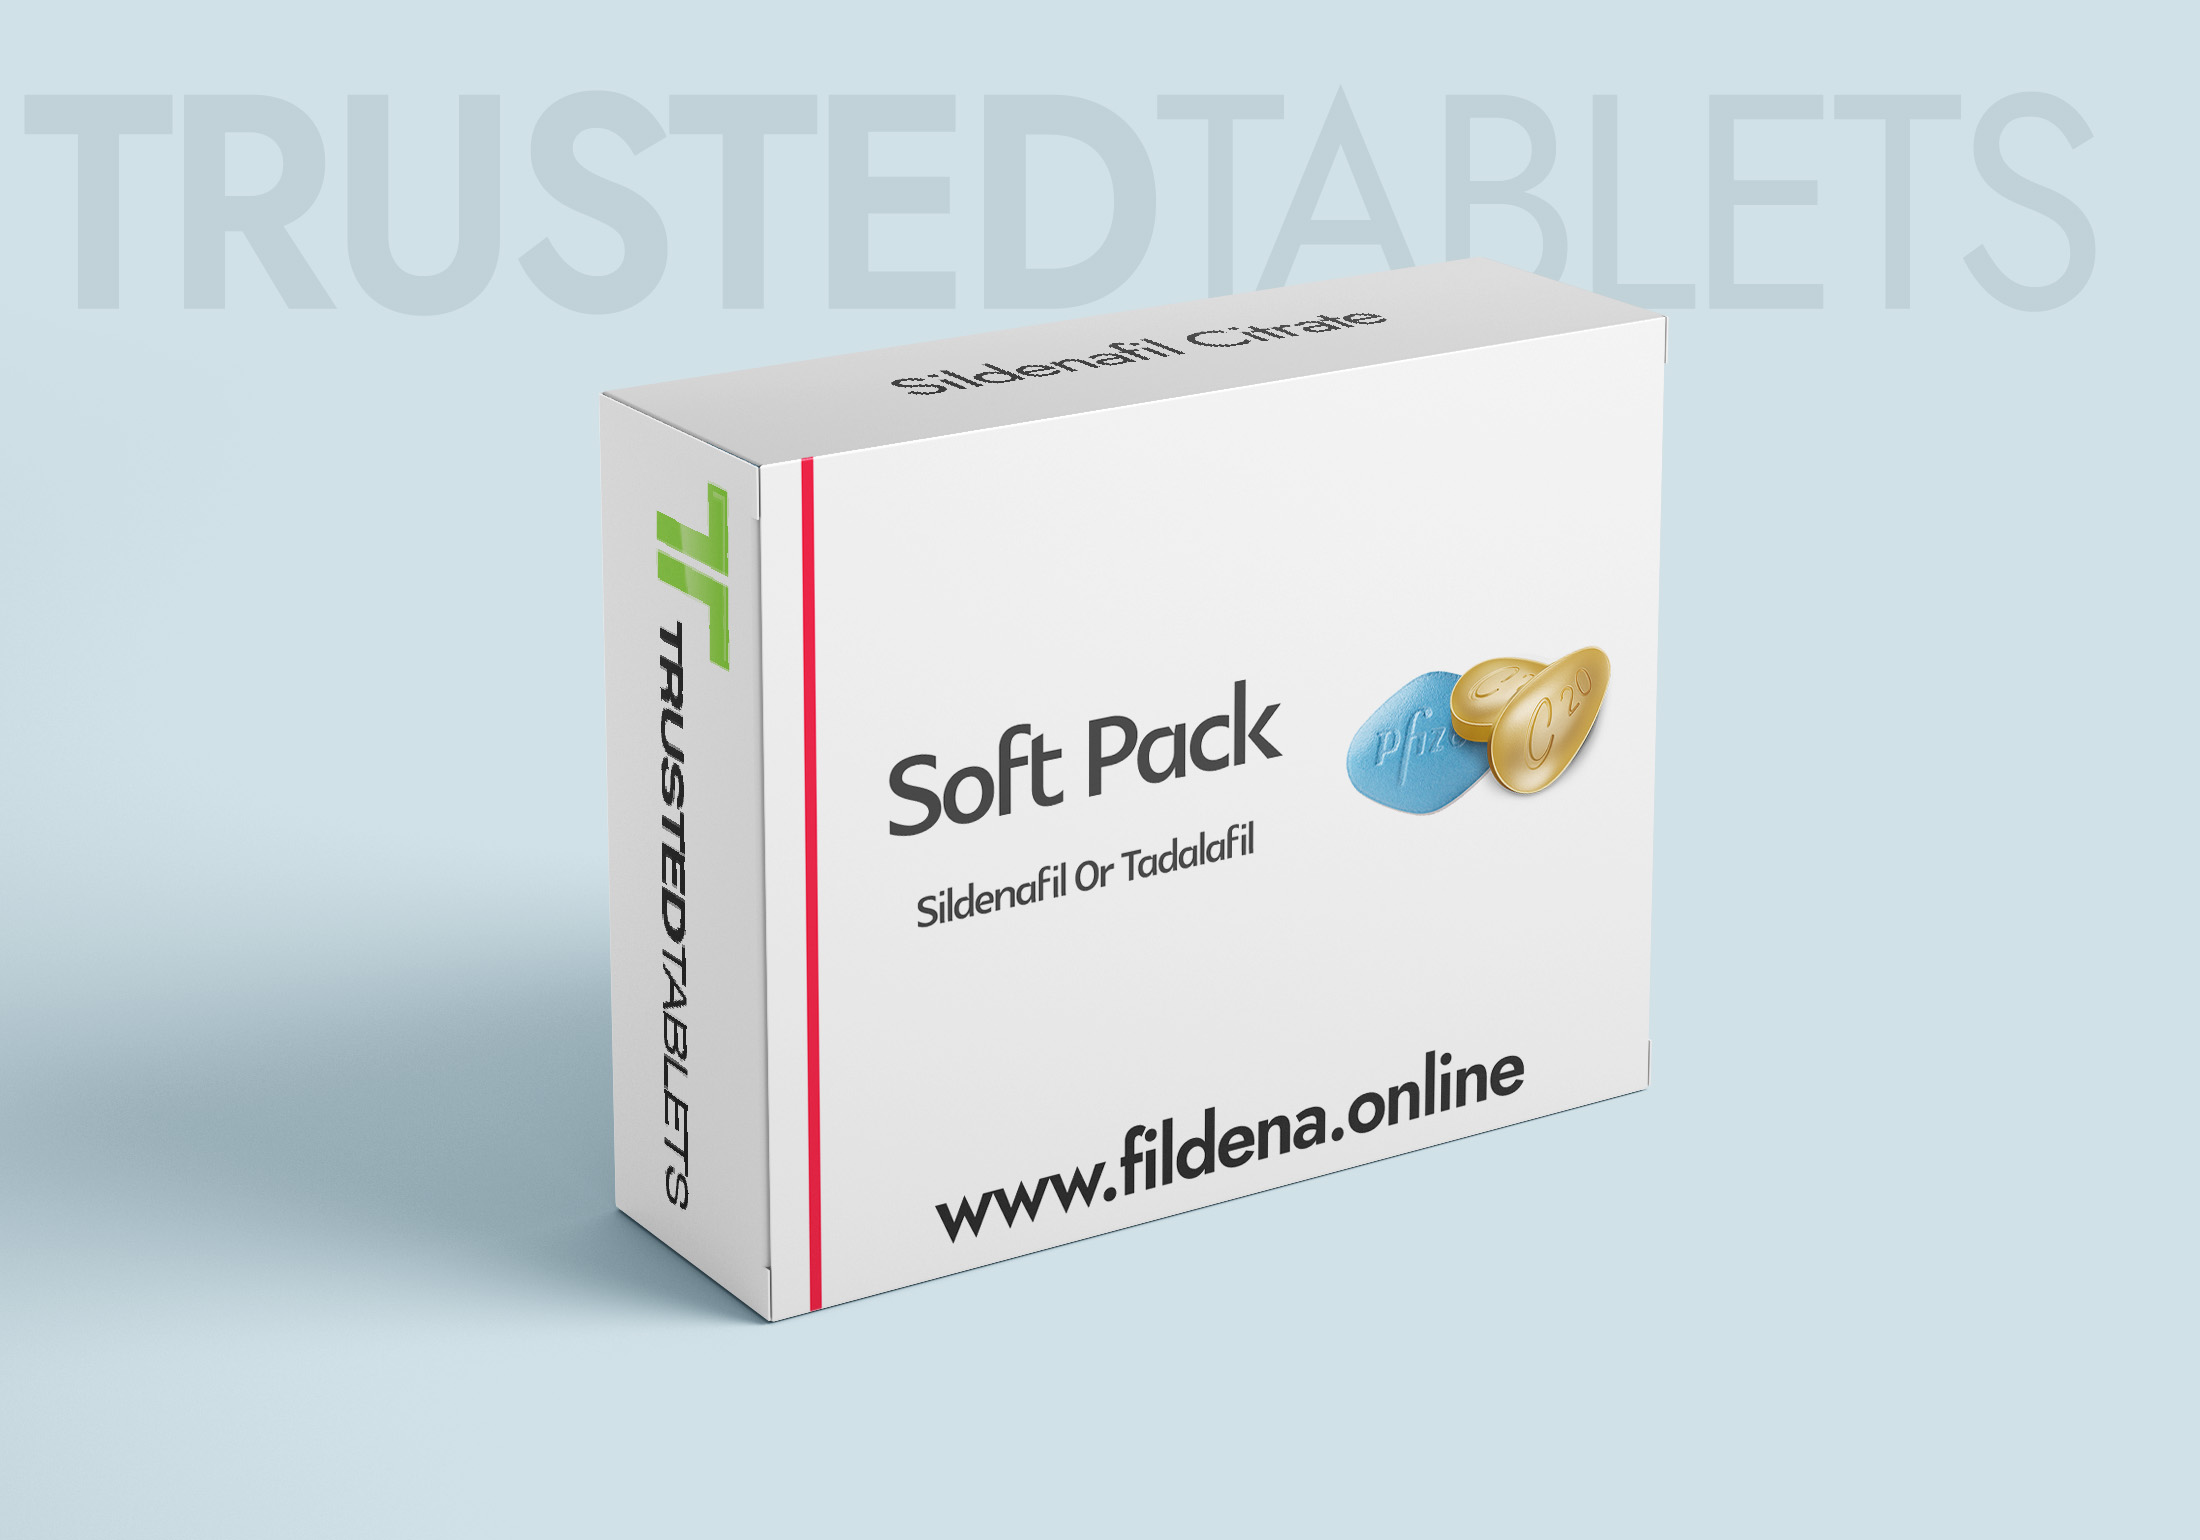 Soft Pack TrustedTablets